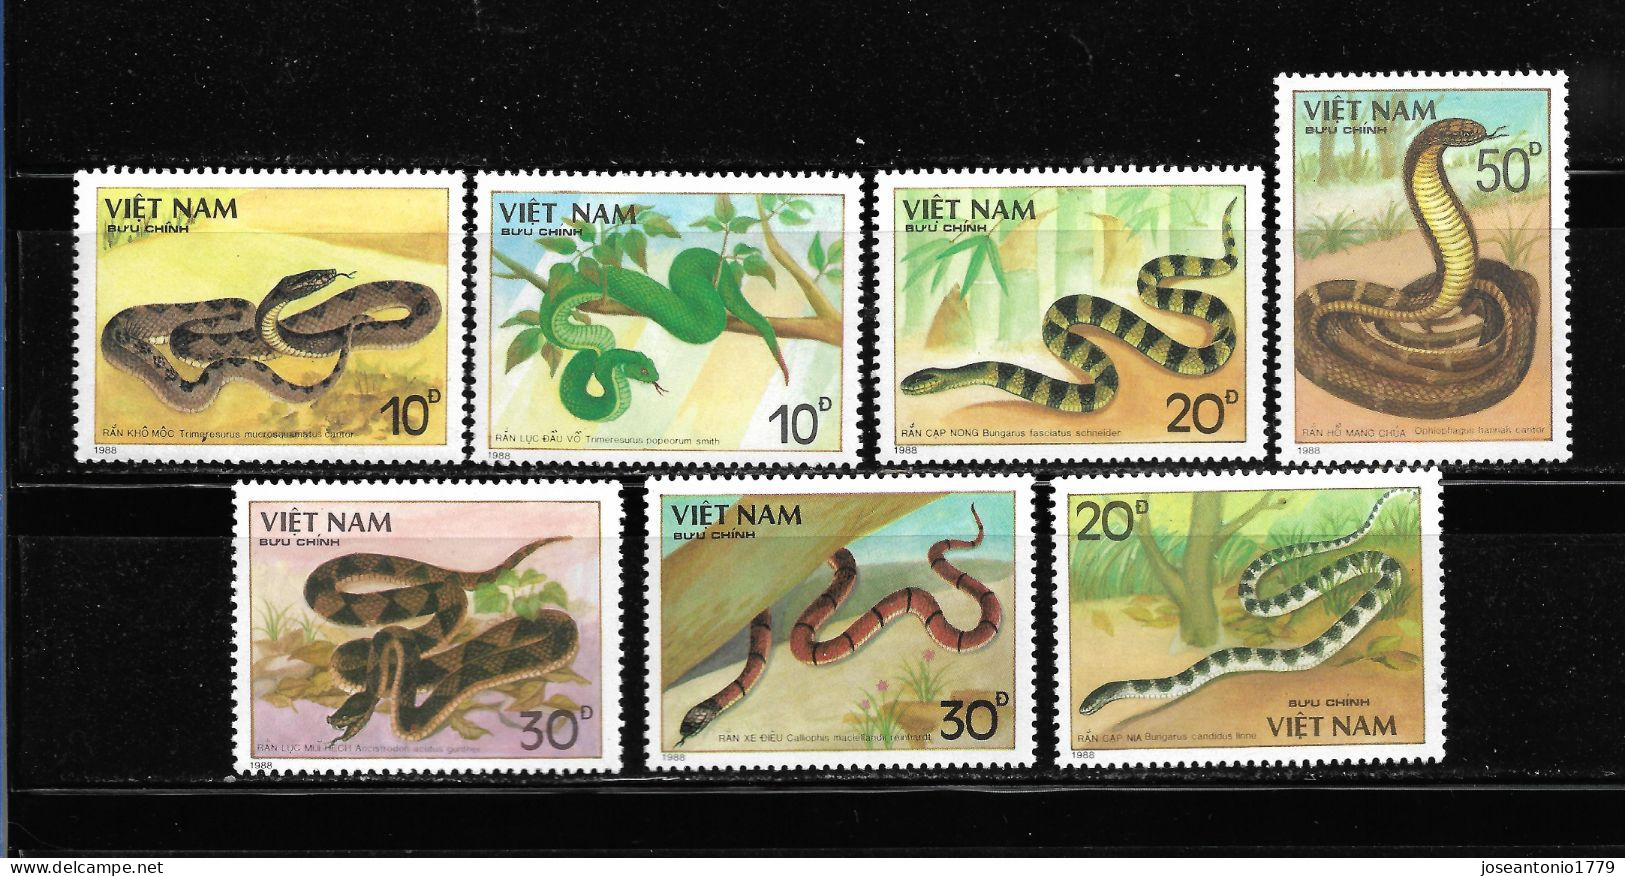 VIETNAM 1988, SERIE Ivert 897/903 TEMÁTIC FAUNA - SERPIENTES. MNH. - Viêt-Nam